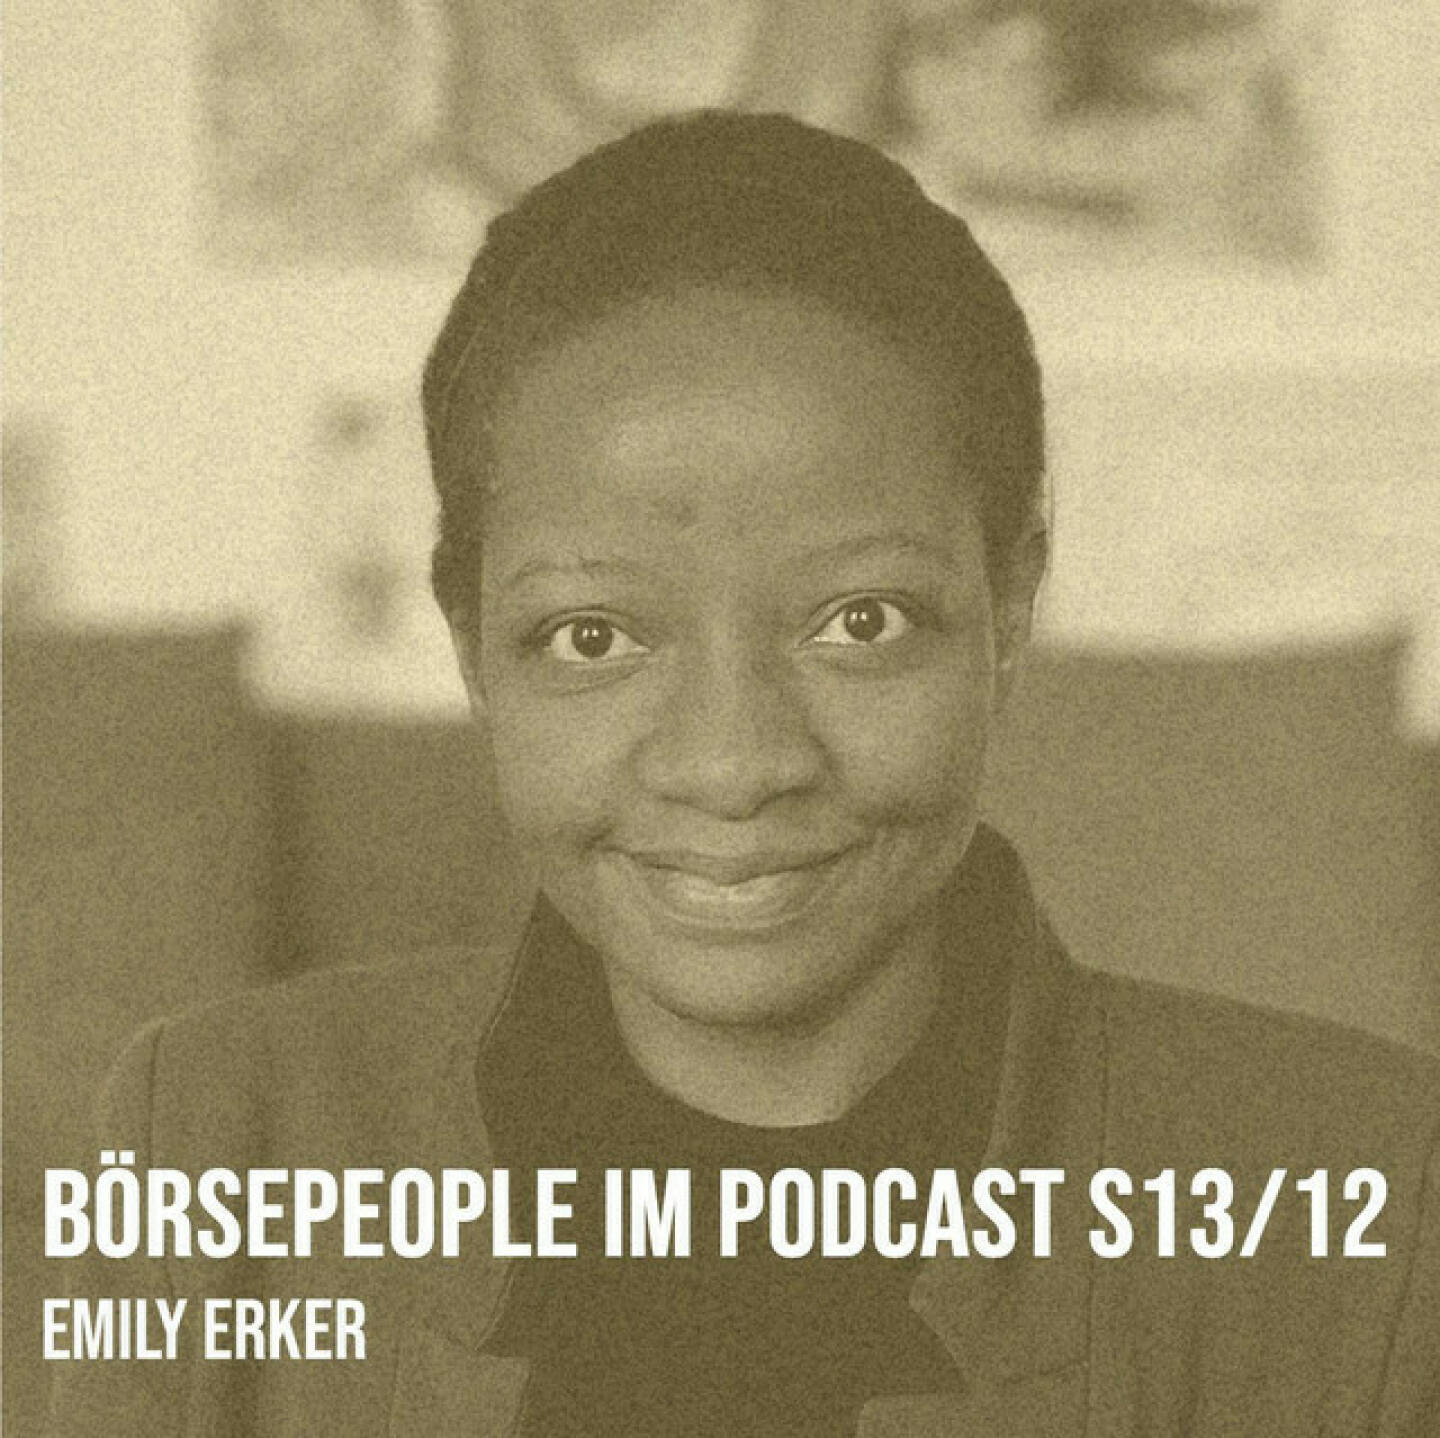 https://open.spotify.com/episode/01HzO9xSABP99cf6i9IAmx
Börsepeople im Podcast S13/12: Emily Erker - <p>Emily Erker ist LinkedIn Top Voice 2022 und Top LinkedIn Influencer Austria (das sind so ca. 50 Leute, ich bin auch dabei, sie ist aber stärker). Emily hat &#43;18k FollowerInnen auf LinkedIn (um 7k mehr als ich), hat &#43;500 YouTube-Podcasts (so nennt sie das) gemacht und ist als Lady Sunshine fast täglich um 19 Uhr auf YouTube und LinkedIn live. Interessant ist, dass wir kumuliert rund 1000 Gäste hatten, aber null Doppelte. Langschläferin Emily hat auch den kurzen Hype Clubhouse mitgemacht, ist mit easyb2p selbstständig, da geht es um Corporate Training, Public Speaking , Brand Marketing, Video Production und so. Wir sprechen auch darüber, wie enttäuschend es ist,  wenn man auf LinkedIn mit scheinbar privaten Profilen schreibt, aber das ungute Gefühl hat, dass da ein Social Media Team oder sogar eine Agentur dahinterstckt. Man merkt das und wir beide raten dringend davon ab. Entweder selbst oder gar nicht.<br/><br/><a href=https://www.youtube.com/&#64;ladysunshine-emily-erker target=_blank>https://www.youtube.com/&#64;ladysunshine-emily-erker</a><br/><br/><a href=https://www.linkedin.com/in/emily-erker-sales-marketing-advertising/ target=_blank>https://www.linkedin.com/in/emily-erker-sales-marketing-advertising/</a><br/><br/><a href=https://www.linkedin.com/company/easyb2p/ target=_blank>https://www.linkedin.com/company/easyb2p/</a><br/><br/>About: Die Serie Börsepeople findet im Rahmen von <a href=http://www.audio-cd.at target=_blank>http://www.audio-cd.at</a> und dem Podcast &#34;Audio-CD.at Indie Podcasts&#34; statt. Es handelt sich dabei um typische Personality- und Werdegang-Gespräche. Die Season 13 umfasst unter dem Motto „24 Börsepeople“ 24 Talks. Presenter der Season 13 ist Vierfeld, <a href=https://www.vierfeld.com target=_blank>https://www.vierfeld.com</a> .Welcher der meistgehörte Börsepeople Podcast ist, sieht man unter <a href=http://www.audio-cd.at/people target=_blank>http://www.audio-cd.at/people.</a> Der Zwischenstand des laufenden Rankings ist tagesaktuell um 12 Uhr aktualisiert.<br/><br/>Bewertungen bei Apple (oder auch Spotify) machen mir Freude: <a href=https://podcasts.apple.com/at/podcast/audio-cd-at-indie-podcasts-wiener-boerse-sport-musik-und-mehr/id1484919130 target=_blank>https://podcasts.apple.com/at/podcast/audio-cd-at-indie-podcasts-wiener-boerse-sport-musik-und-mehr/id1484919130</a> .</p>